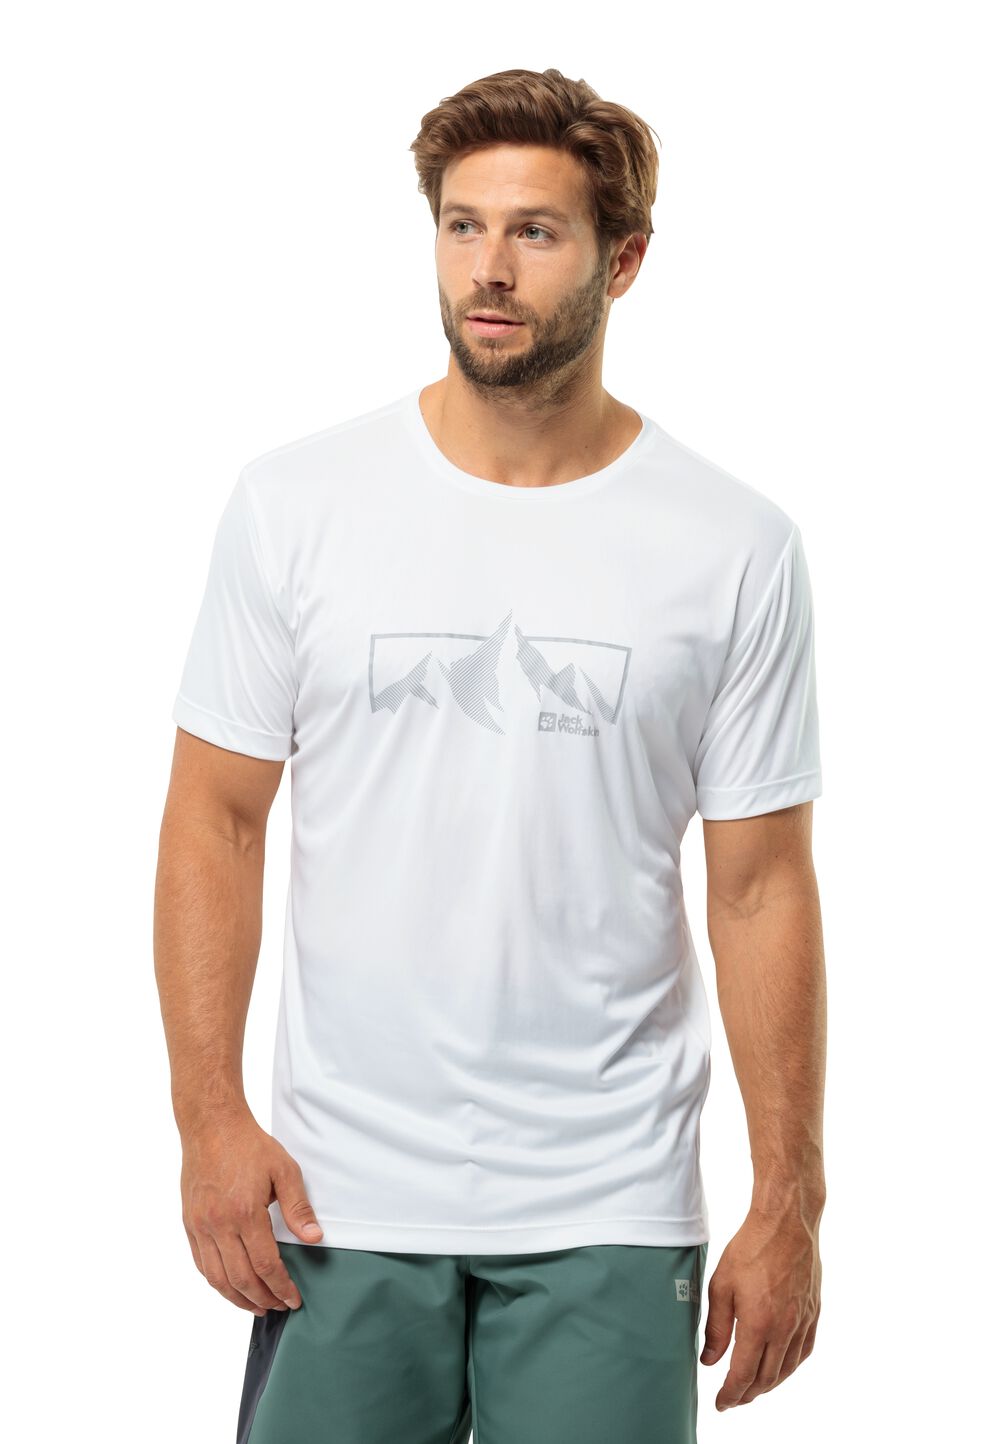 Jack Wolfskin Peak Graphic T-Shirt Men Functioneel shirt Heren XXL wit stark white